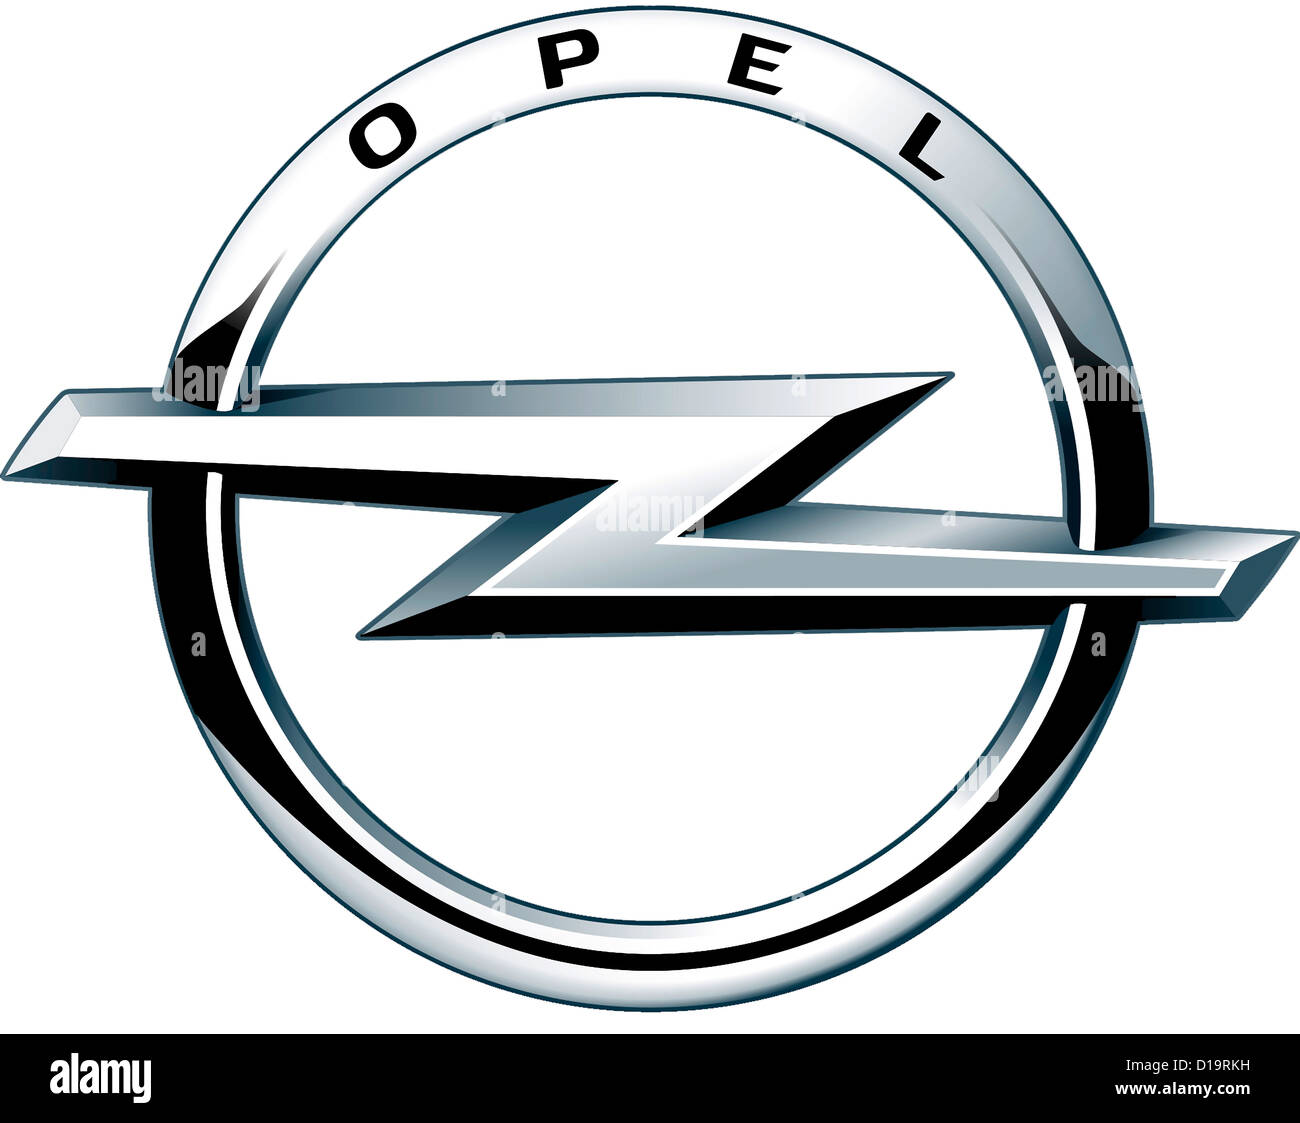 Logo des deutschen Automobilherstellers Opel mit Sitz in Rüsselsheim - Adam Opel AG. Stockfoto